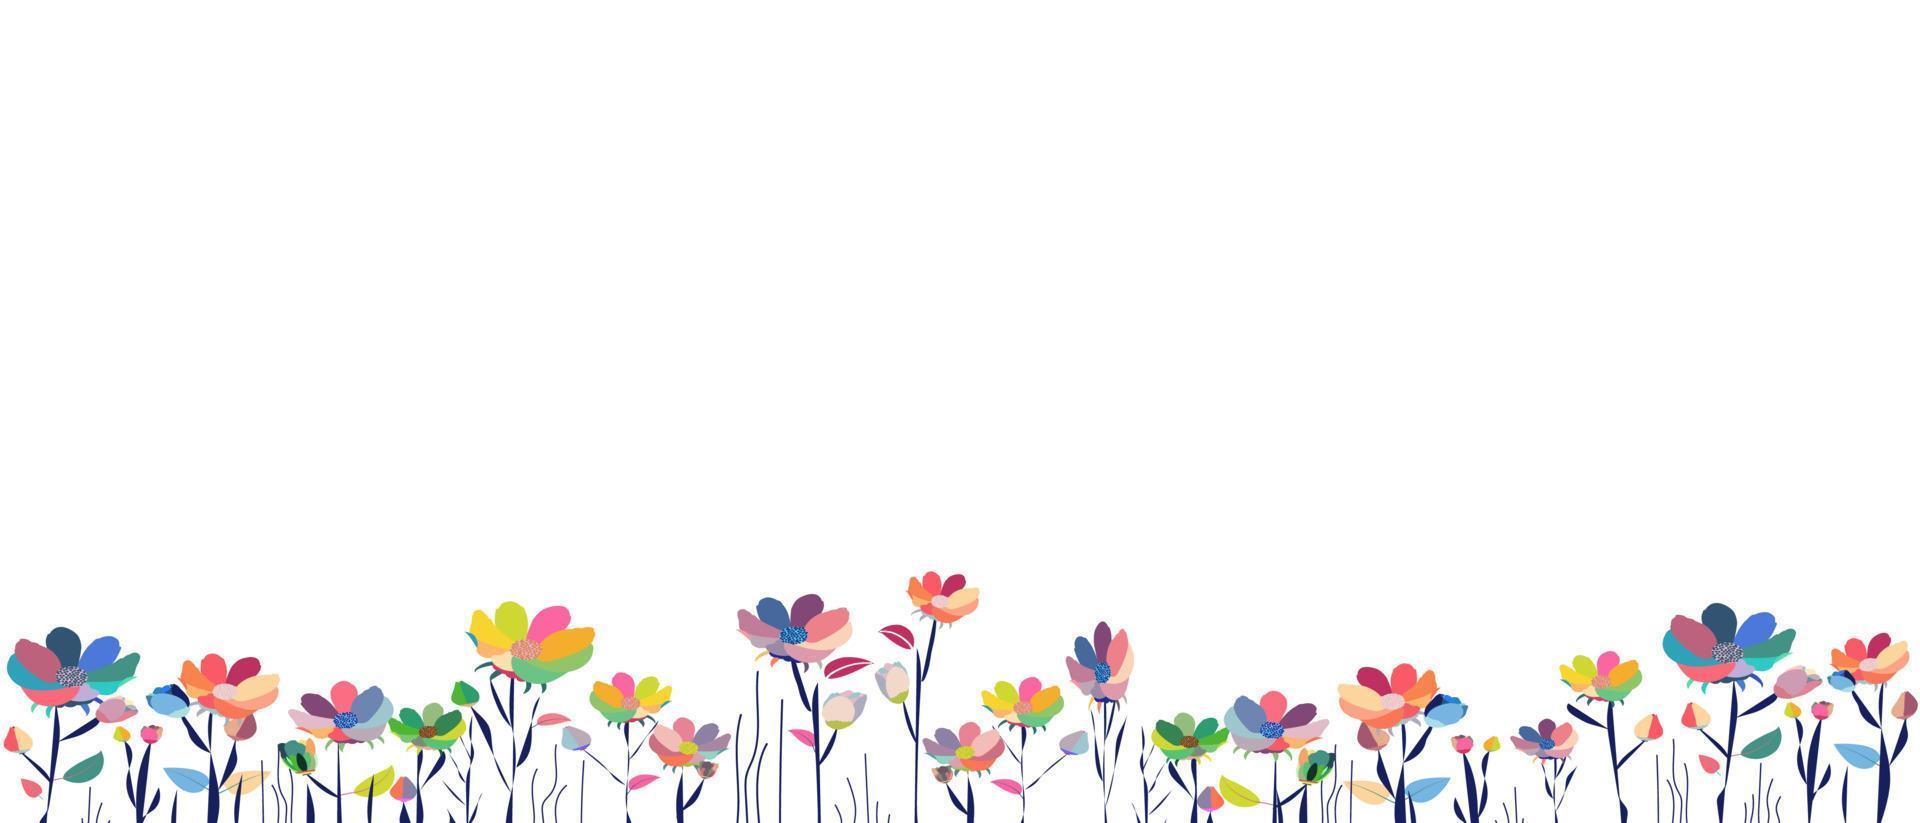 Horizontales weißes Banner oder floraler Hintergrund, dekoriert mit wunderschönen mehrfarbigen Blumen und Blättern Frühling botanische Grenze flach auf weißem Hintergrund. vektor